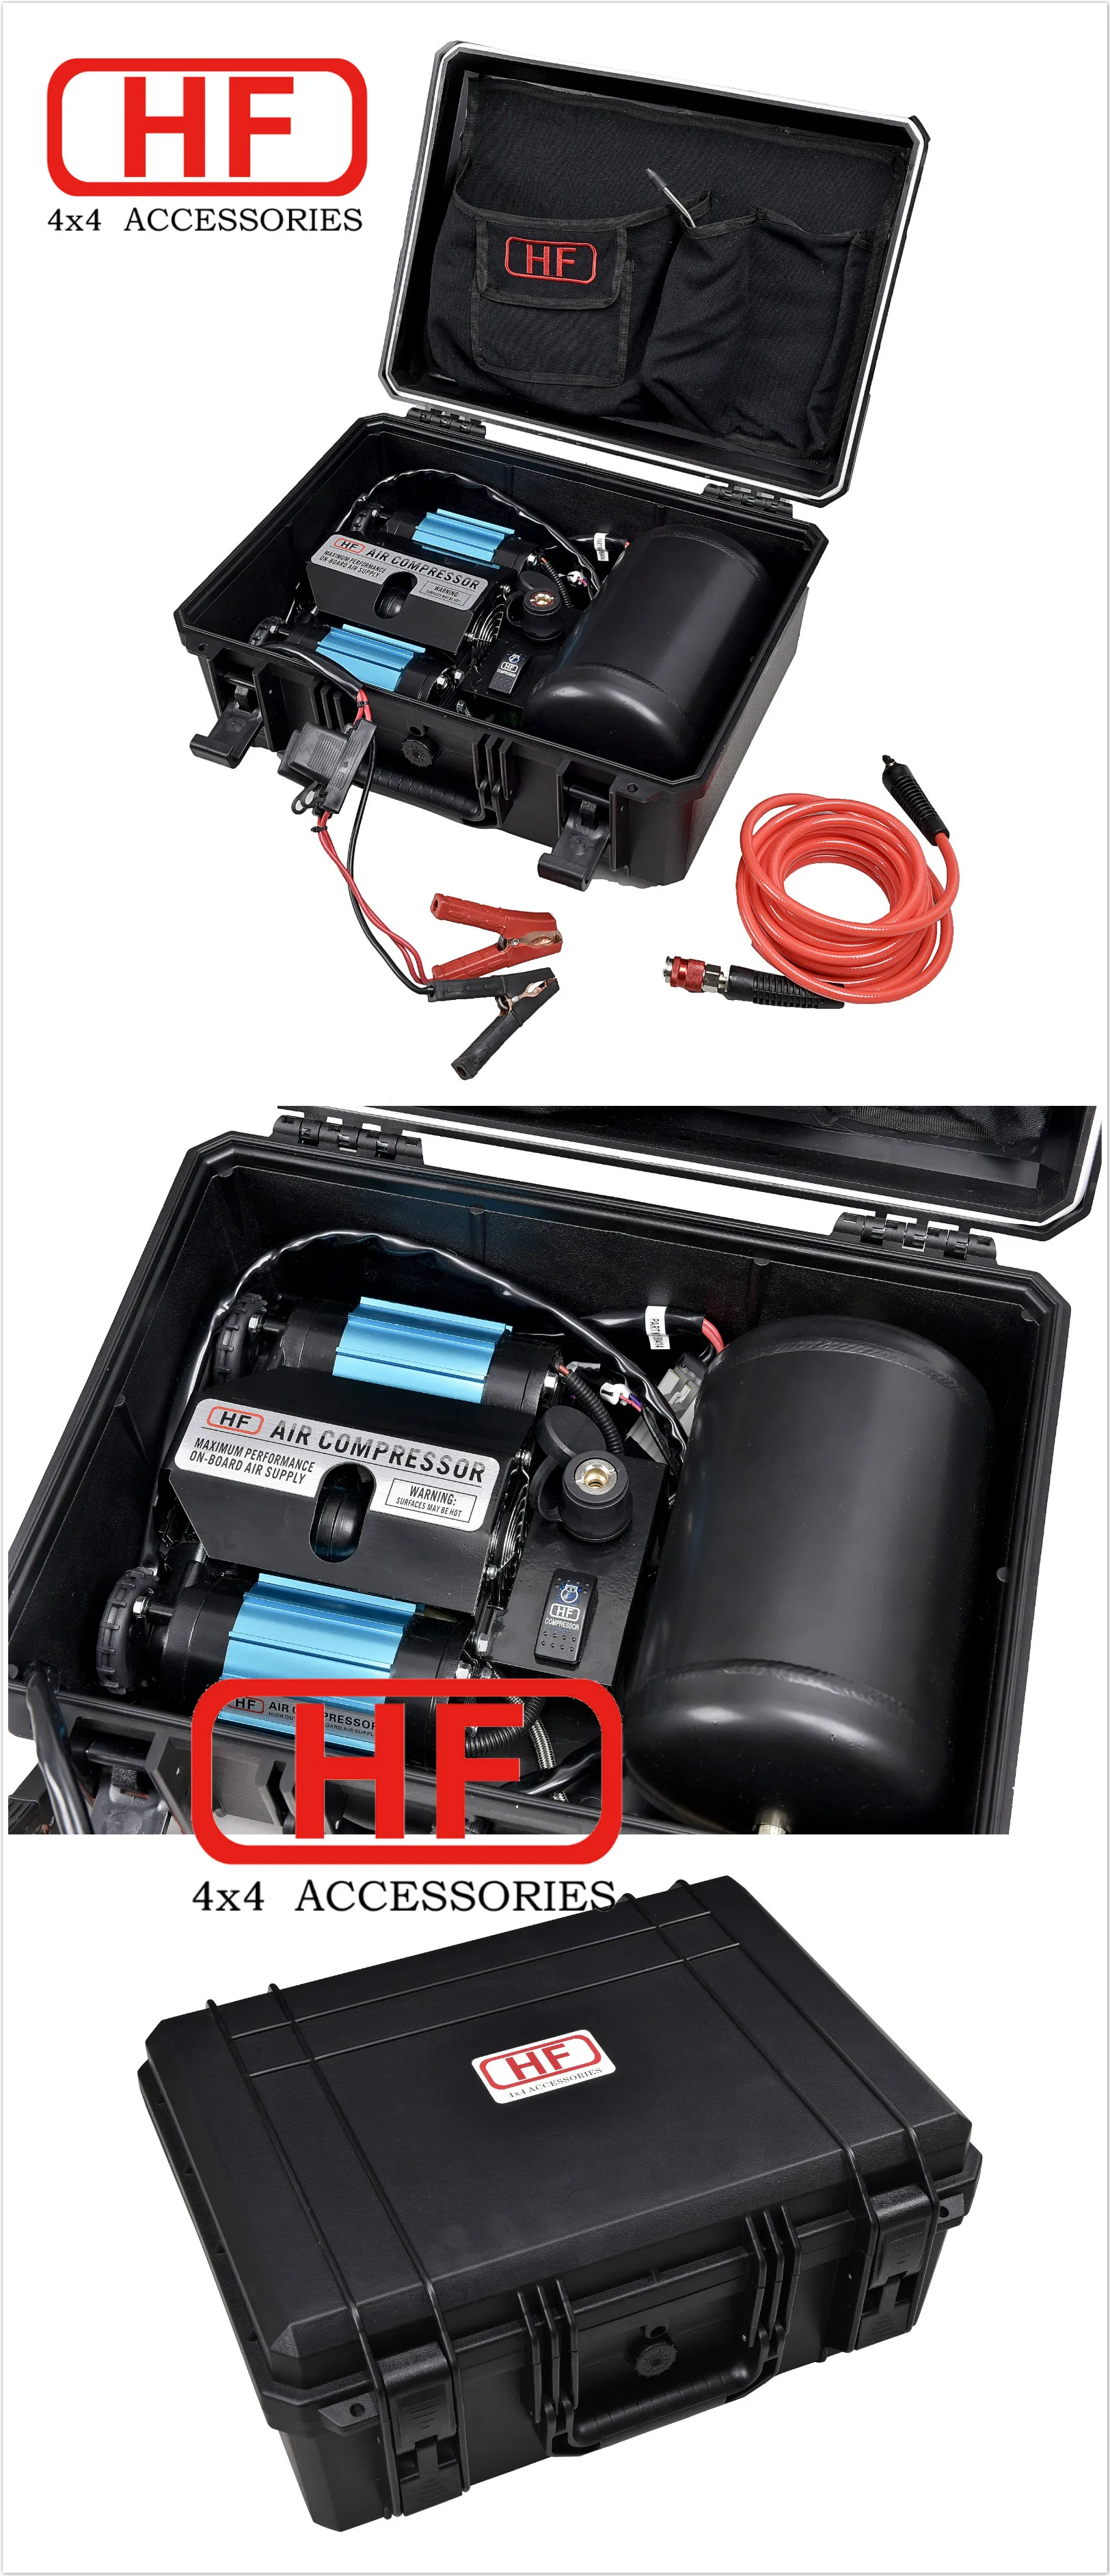 Air Compressor Hf 4x4 Accessories Portable Air Compressor 12v High